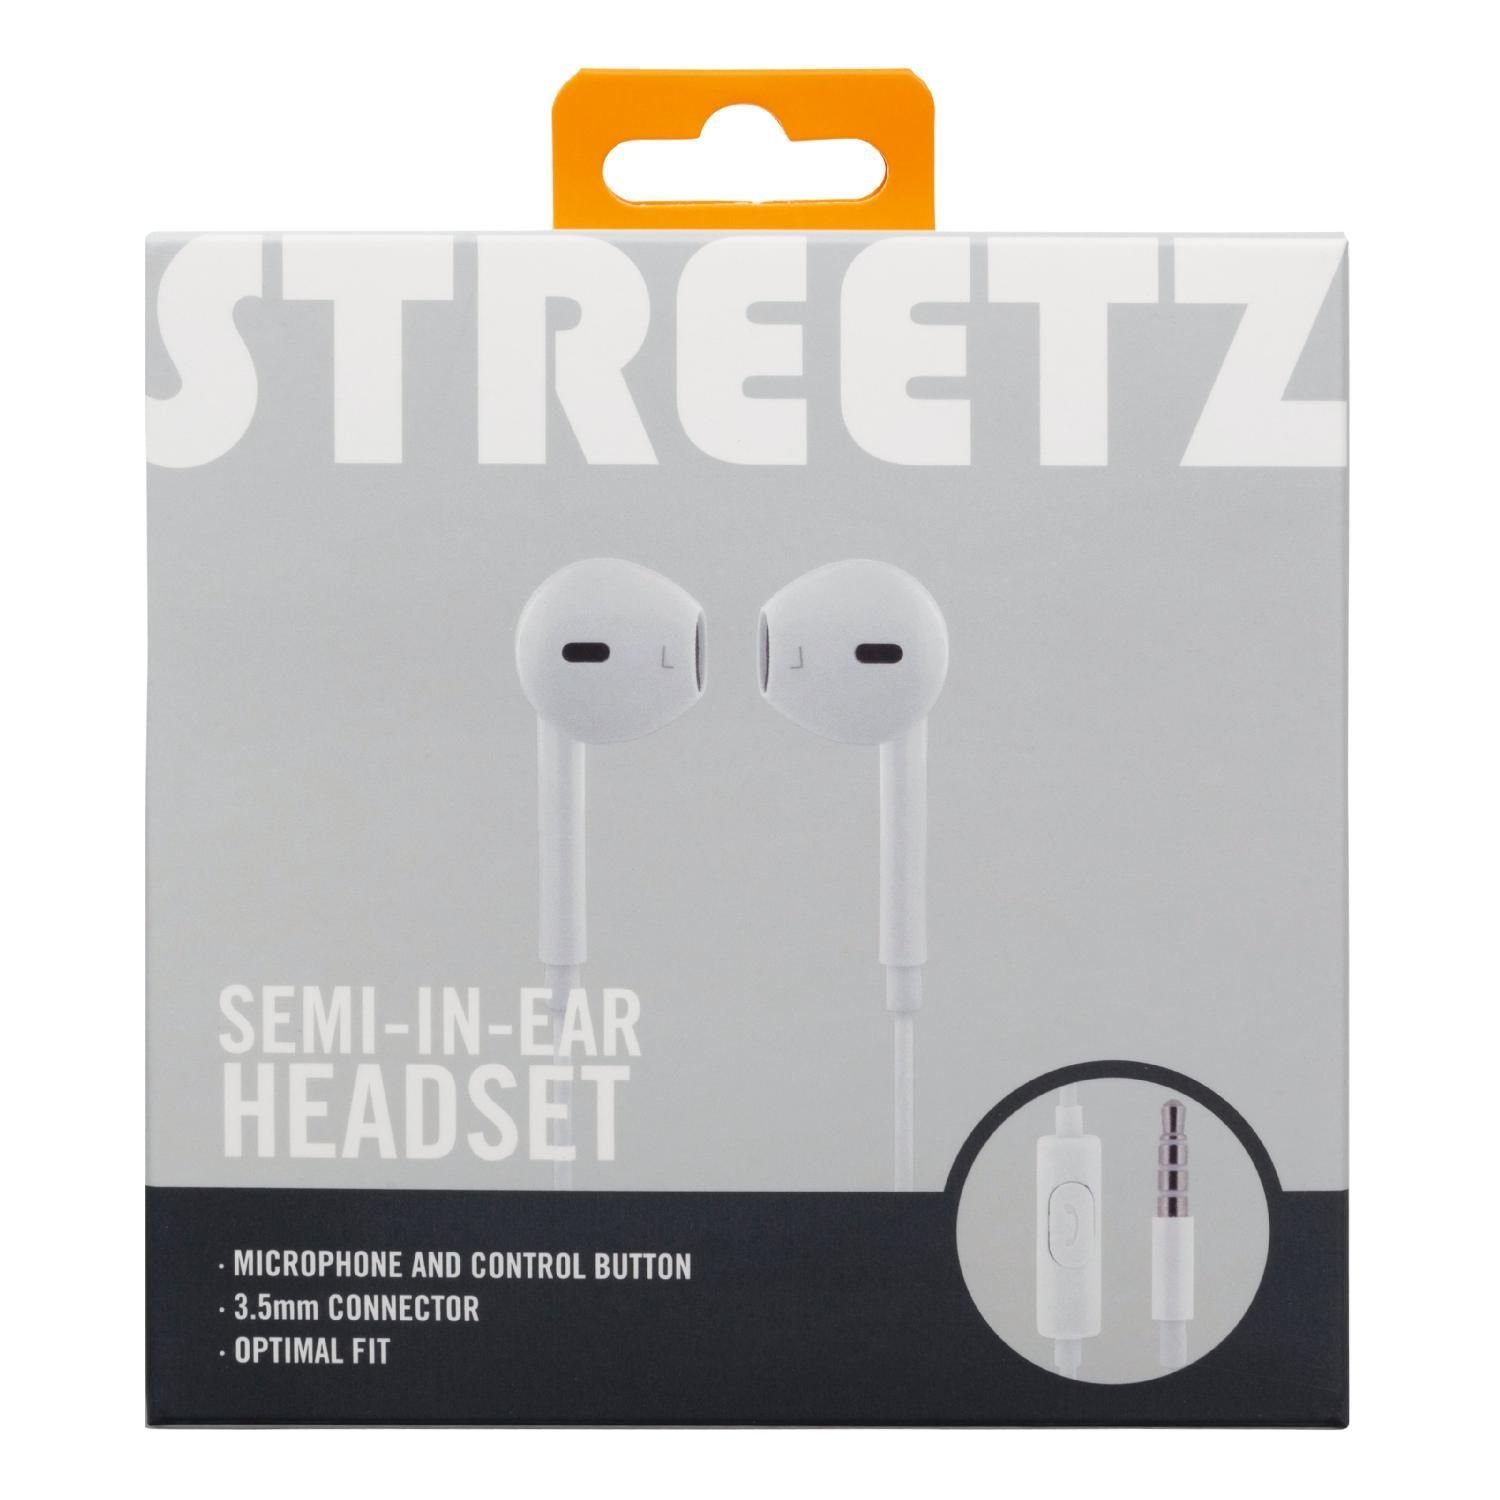 Herstellergarantie) weiß Headset/Kopfhörer mm 1,2 m Mikrofon 5 3,5 inkl. In-Ear-Kopfhörer (integriertes STREETZ Semi-In-Ear Mikrofon, inkl. Jahre